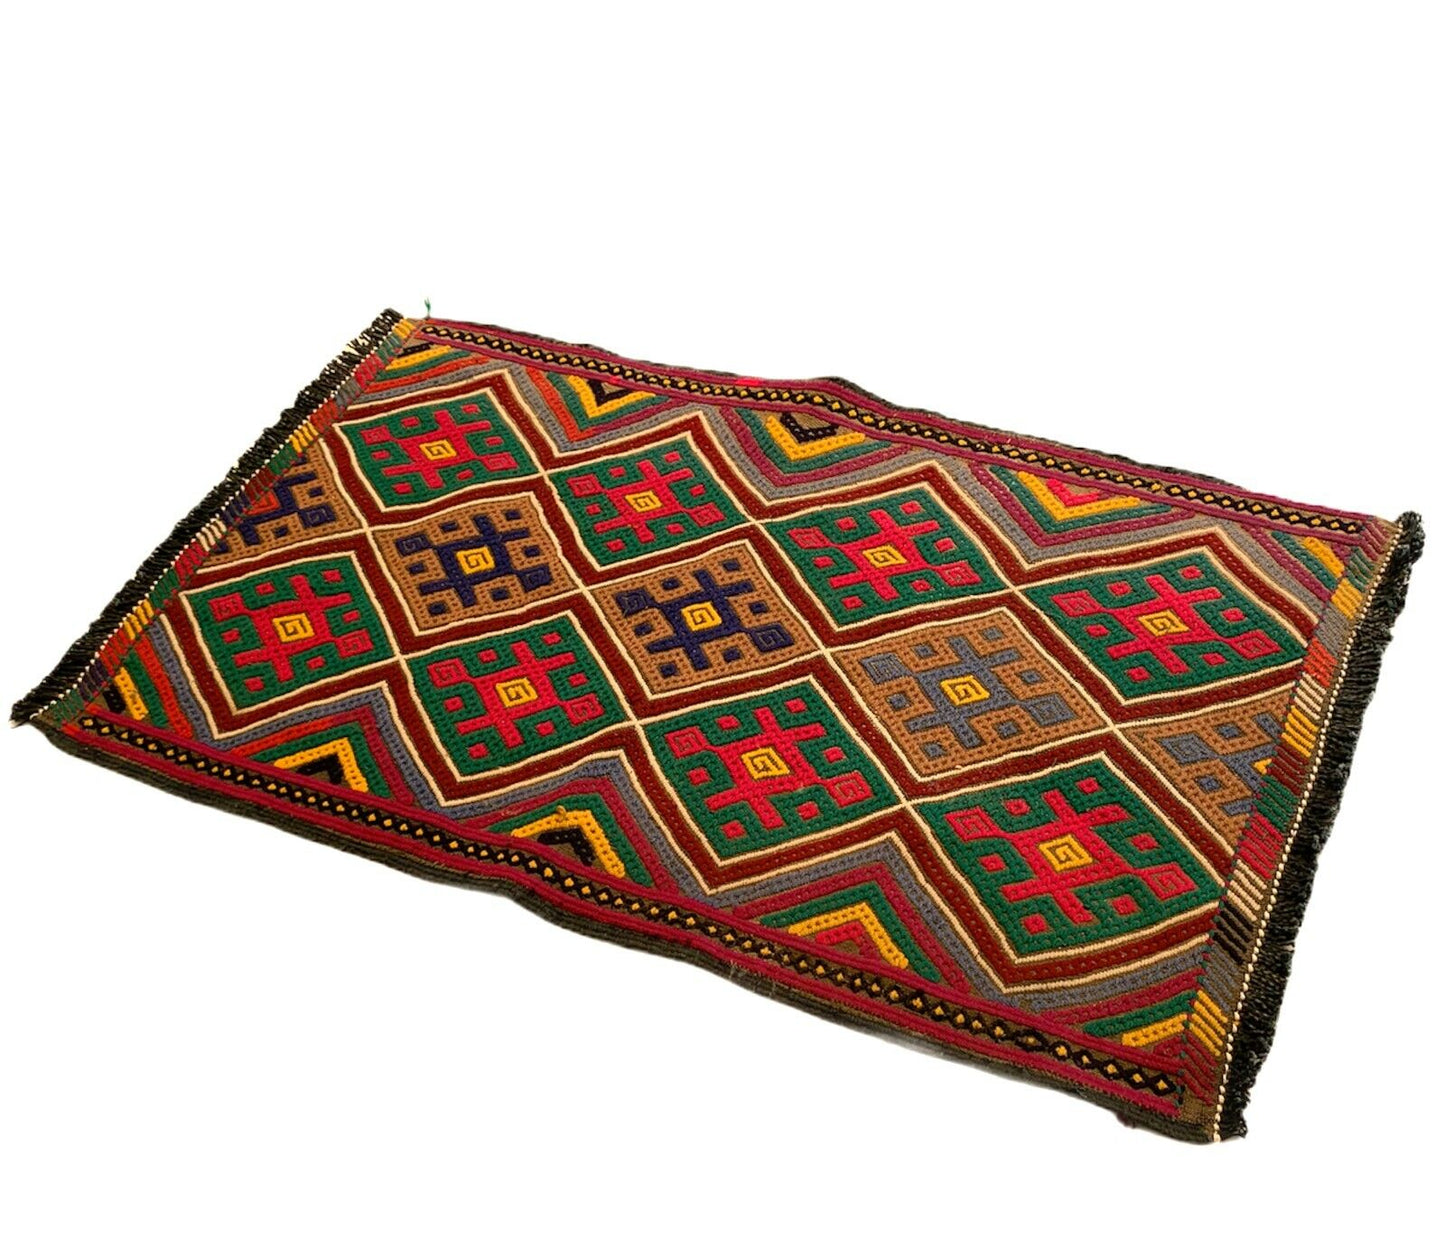 Traditional Turkish Kilim Carpet, Vintage Wool Country Kilim 85X55 Cm